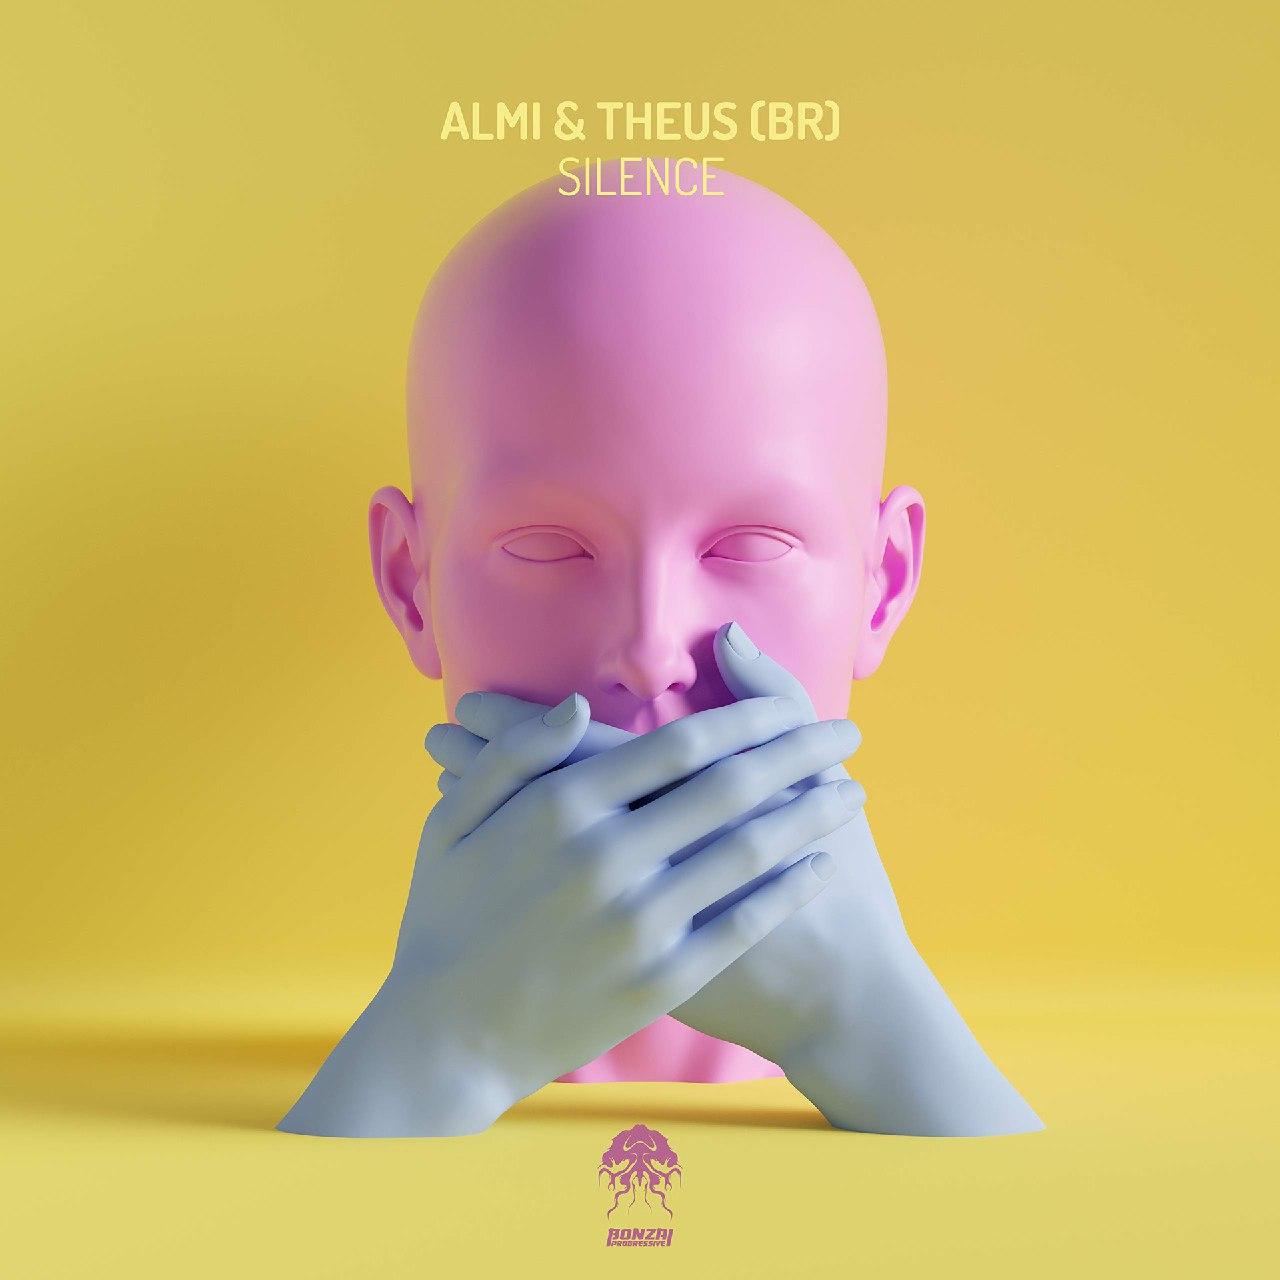 Almi & Theus (BR) - Silence (Seth Vogt Remix)